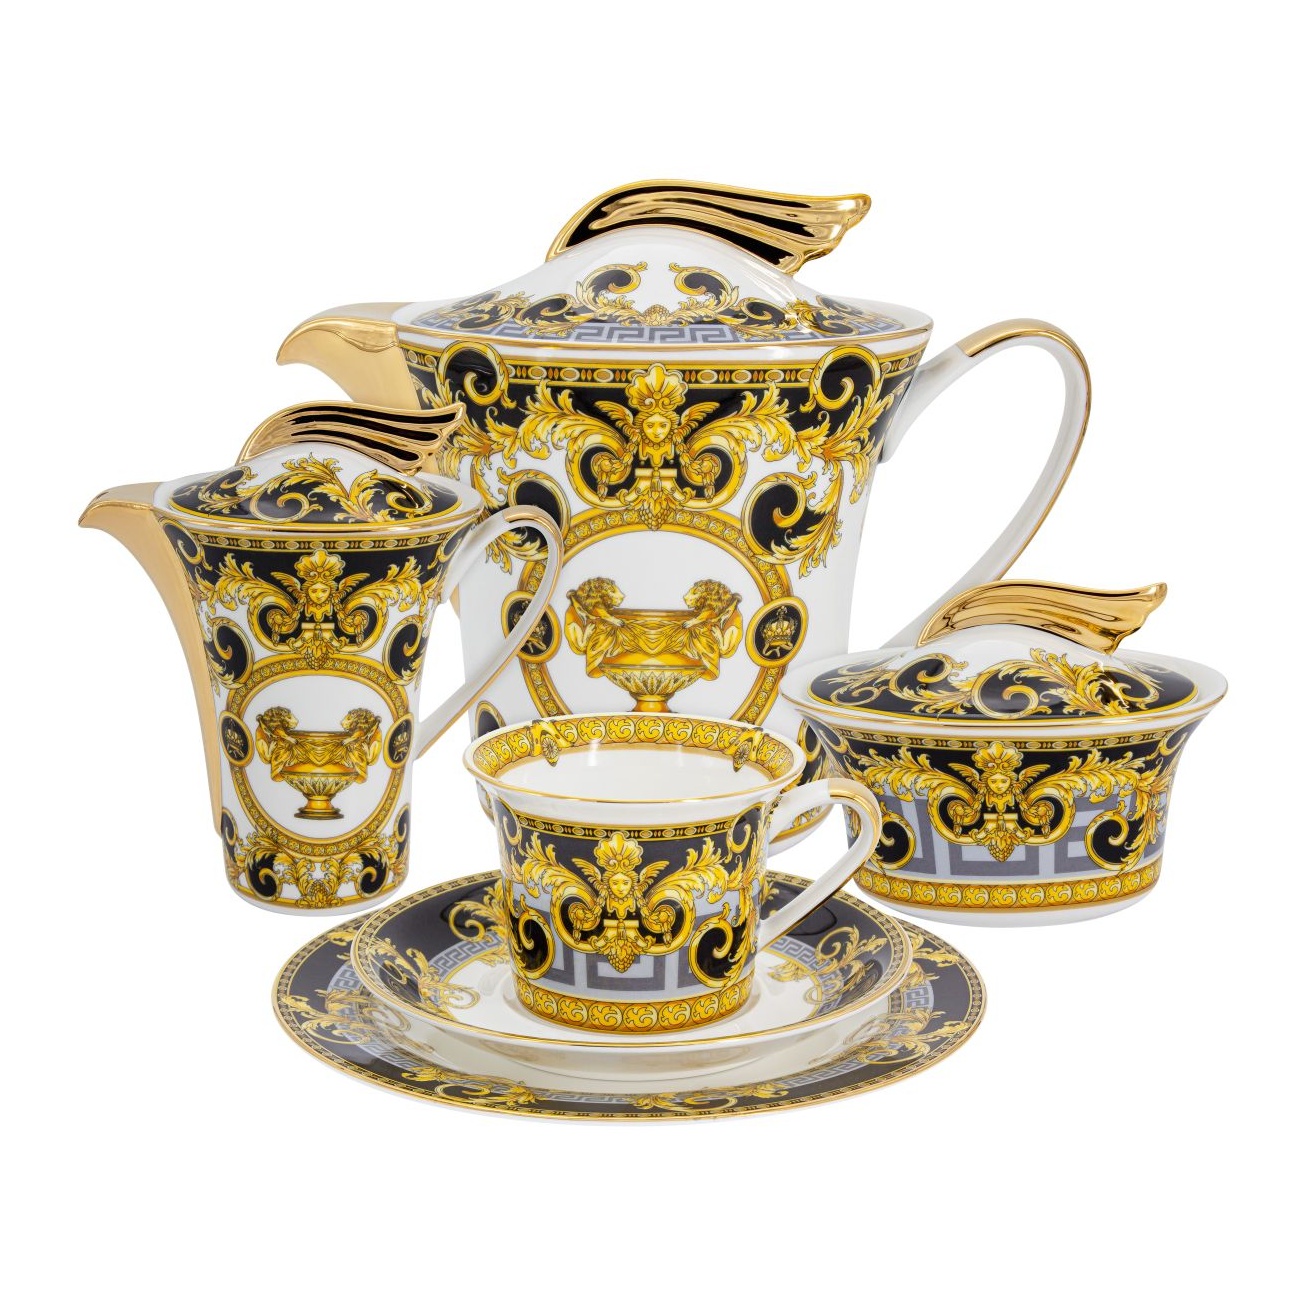 Сервиз чайный Royal Crown Консул 21 предмет 6 персон сервиз чайный royal crown тиара 6 персон 21 предмет